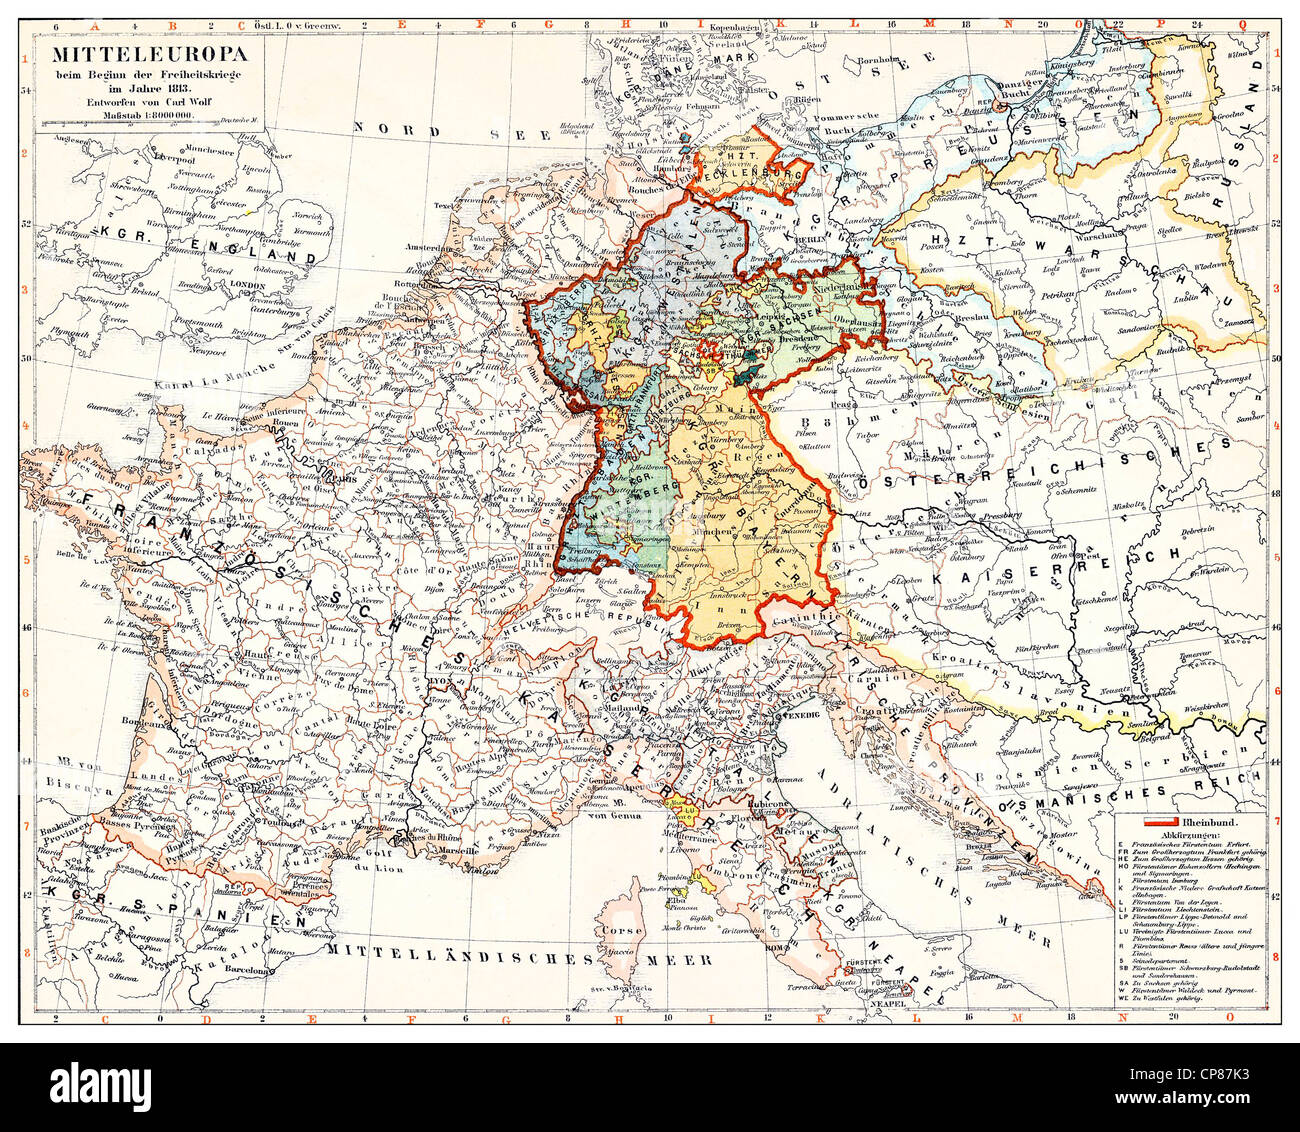 Carte historique de l'Allemagne et l'Europe centrale au début de l'batailles révolutionnaires, 1813, Historische, zeichnerische Dar Banque D'Images